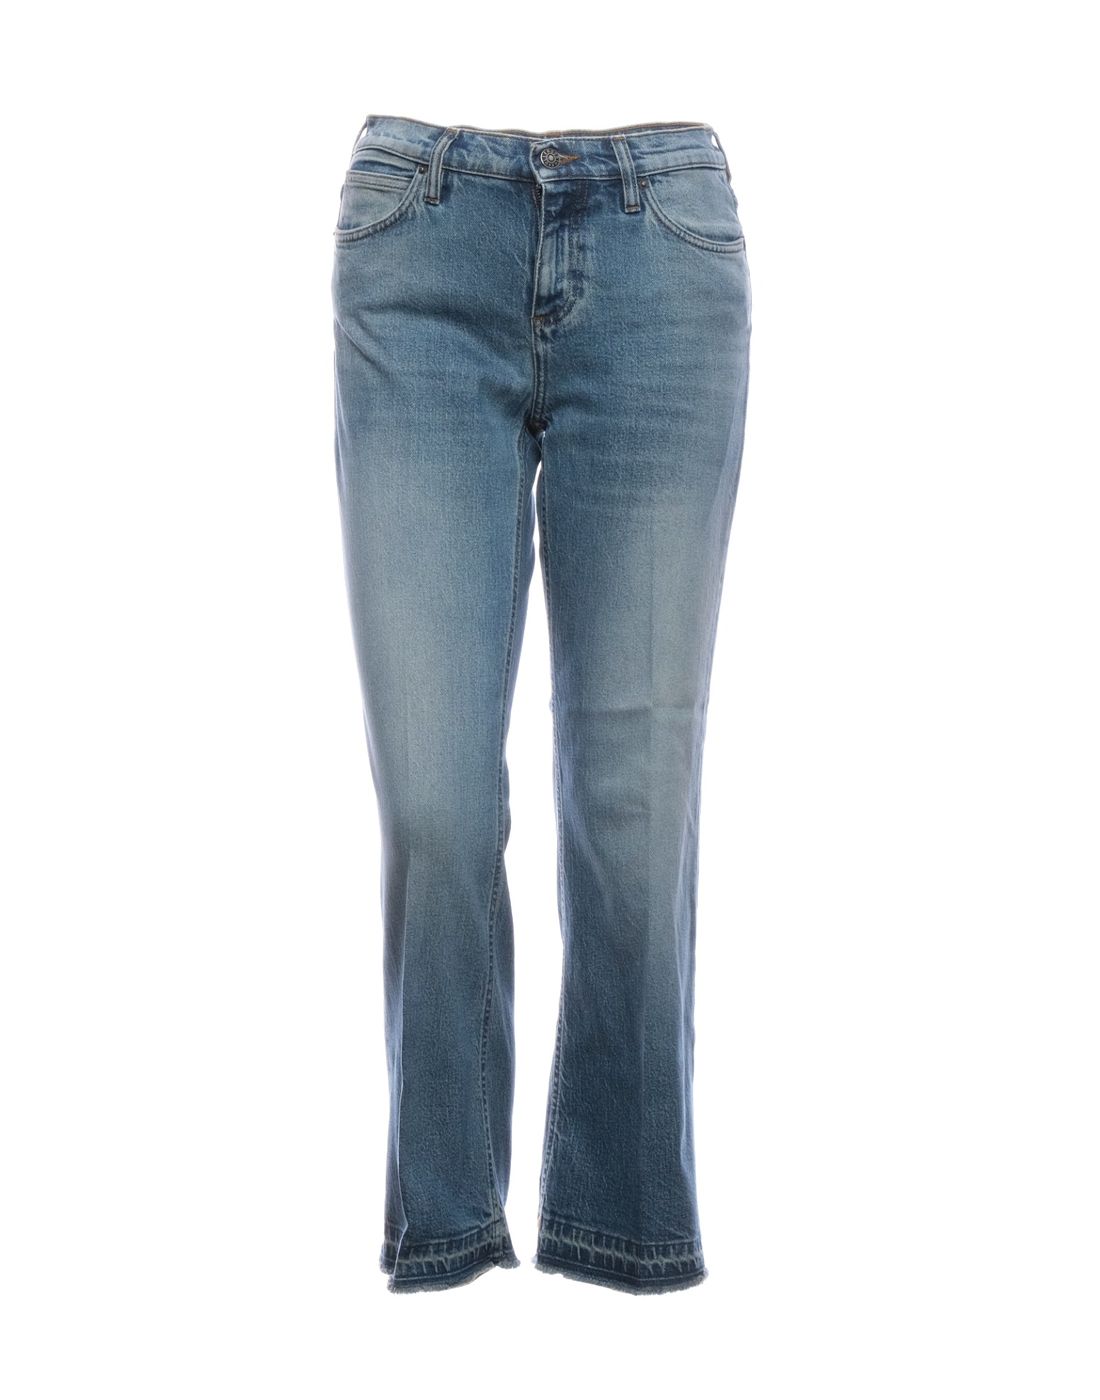 Jeans for women DON THE FULLER BELLE DTF FOS 1138